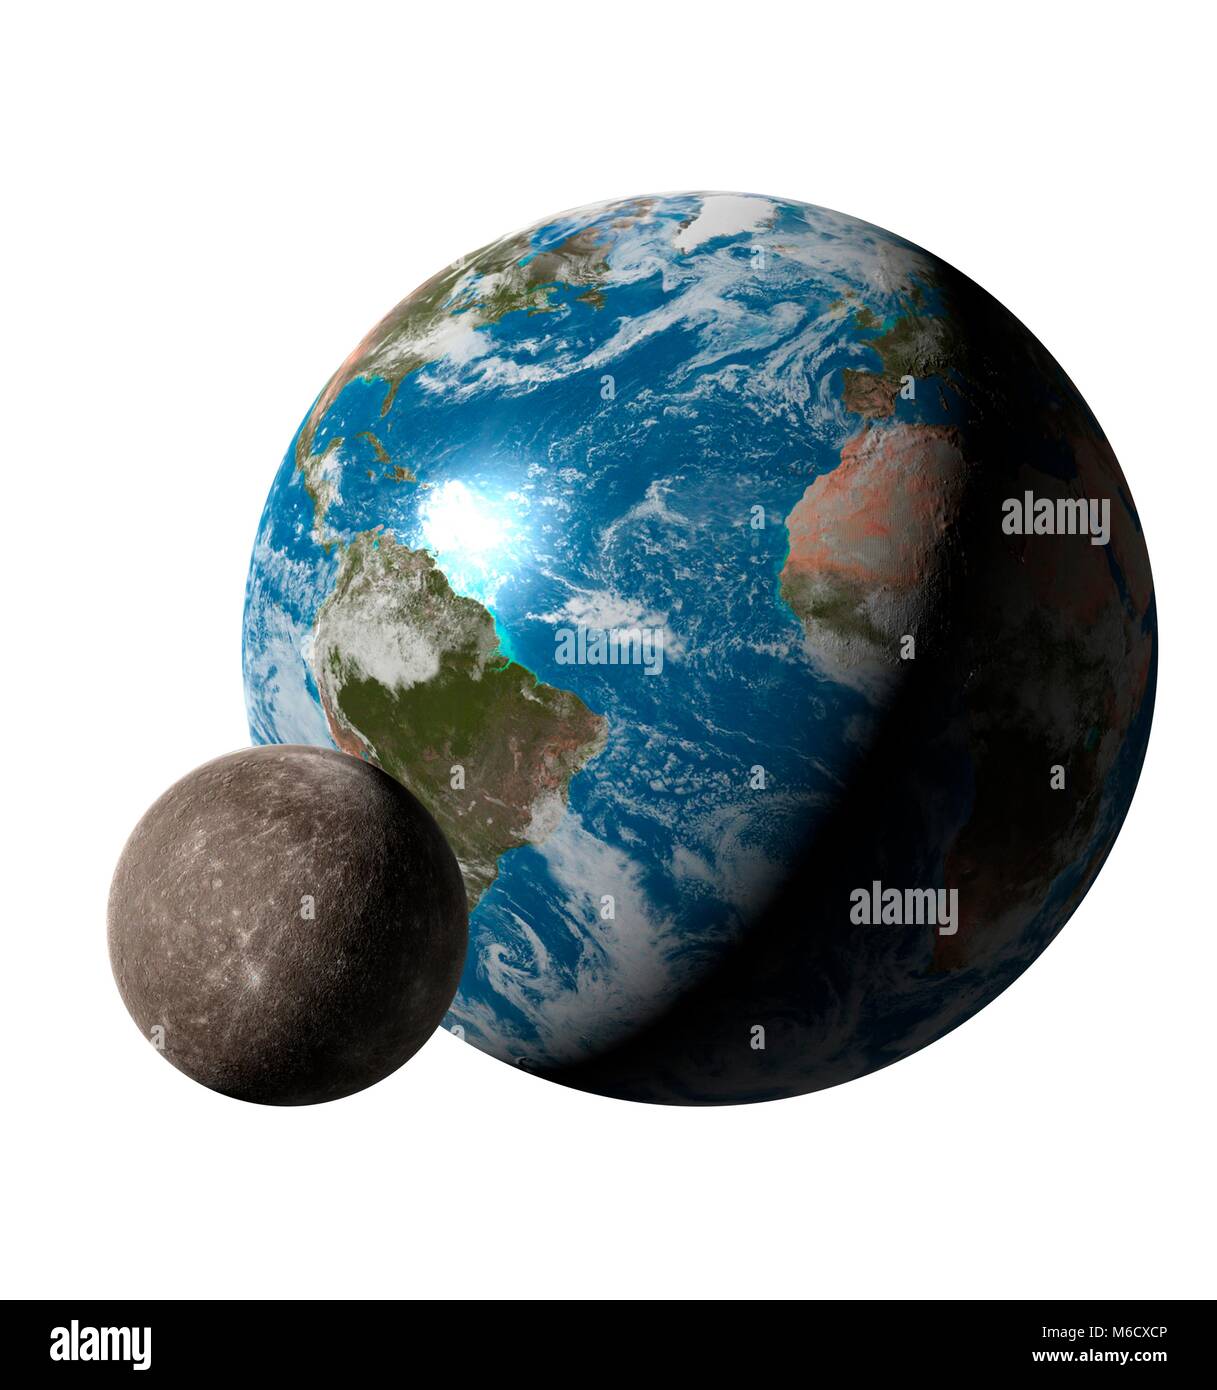 La comparaison de l'image La taille de la terre (à droite) avec la planète Mercure. C'est la planète la plus proche du Soleil, avec une distance moyenne de 0,39 fois de la distance Terre-Soleil. Avec un diamètre de 38  % que de la Terre, Mercure est la plus petite planète du système solaire. Banque D'Images